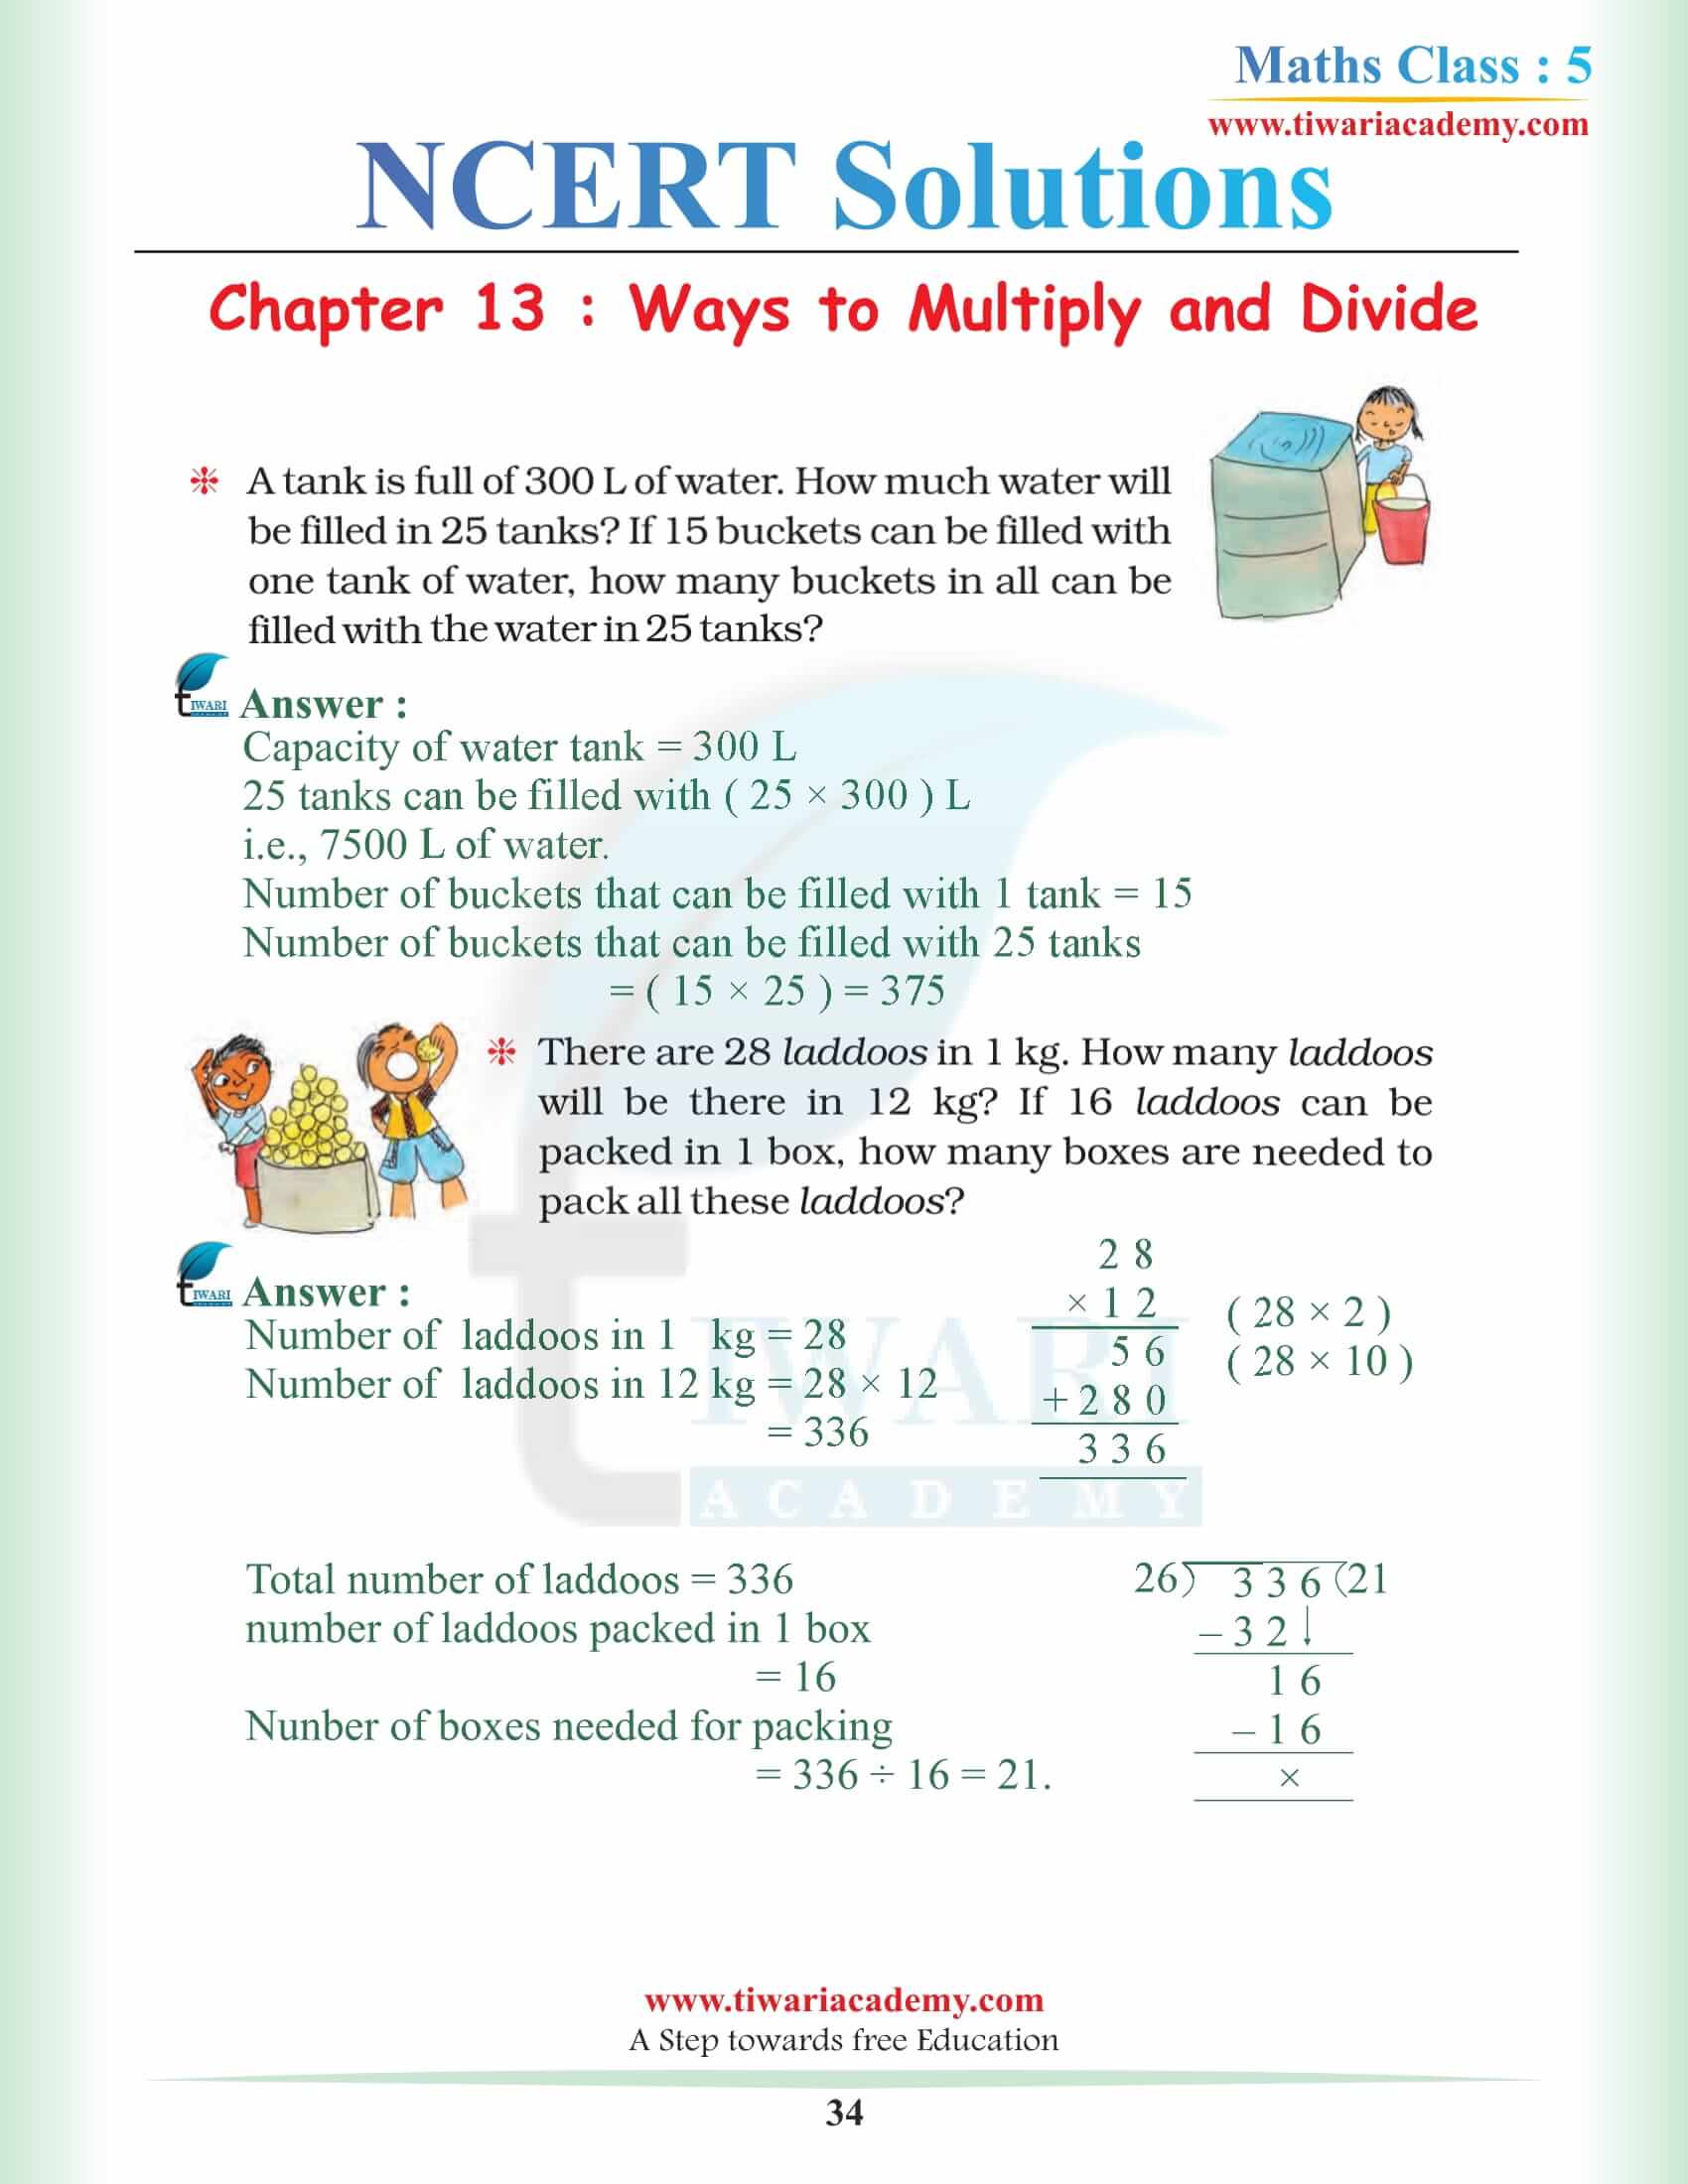 5th Math Chapter 13 NCERT